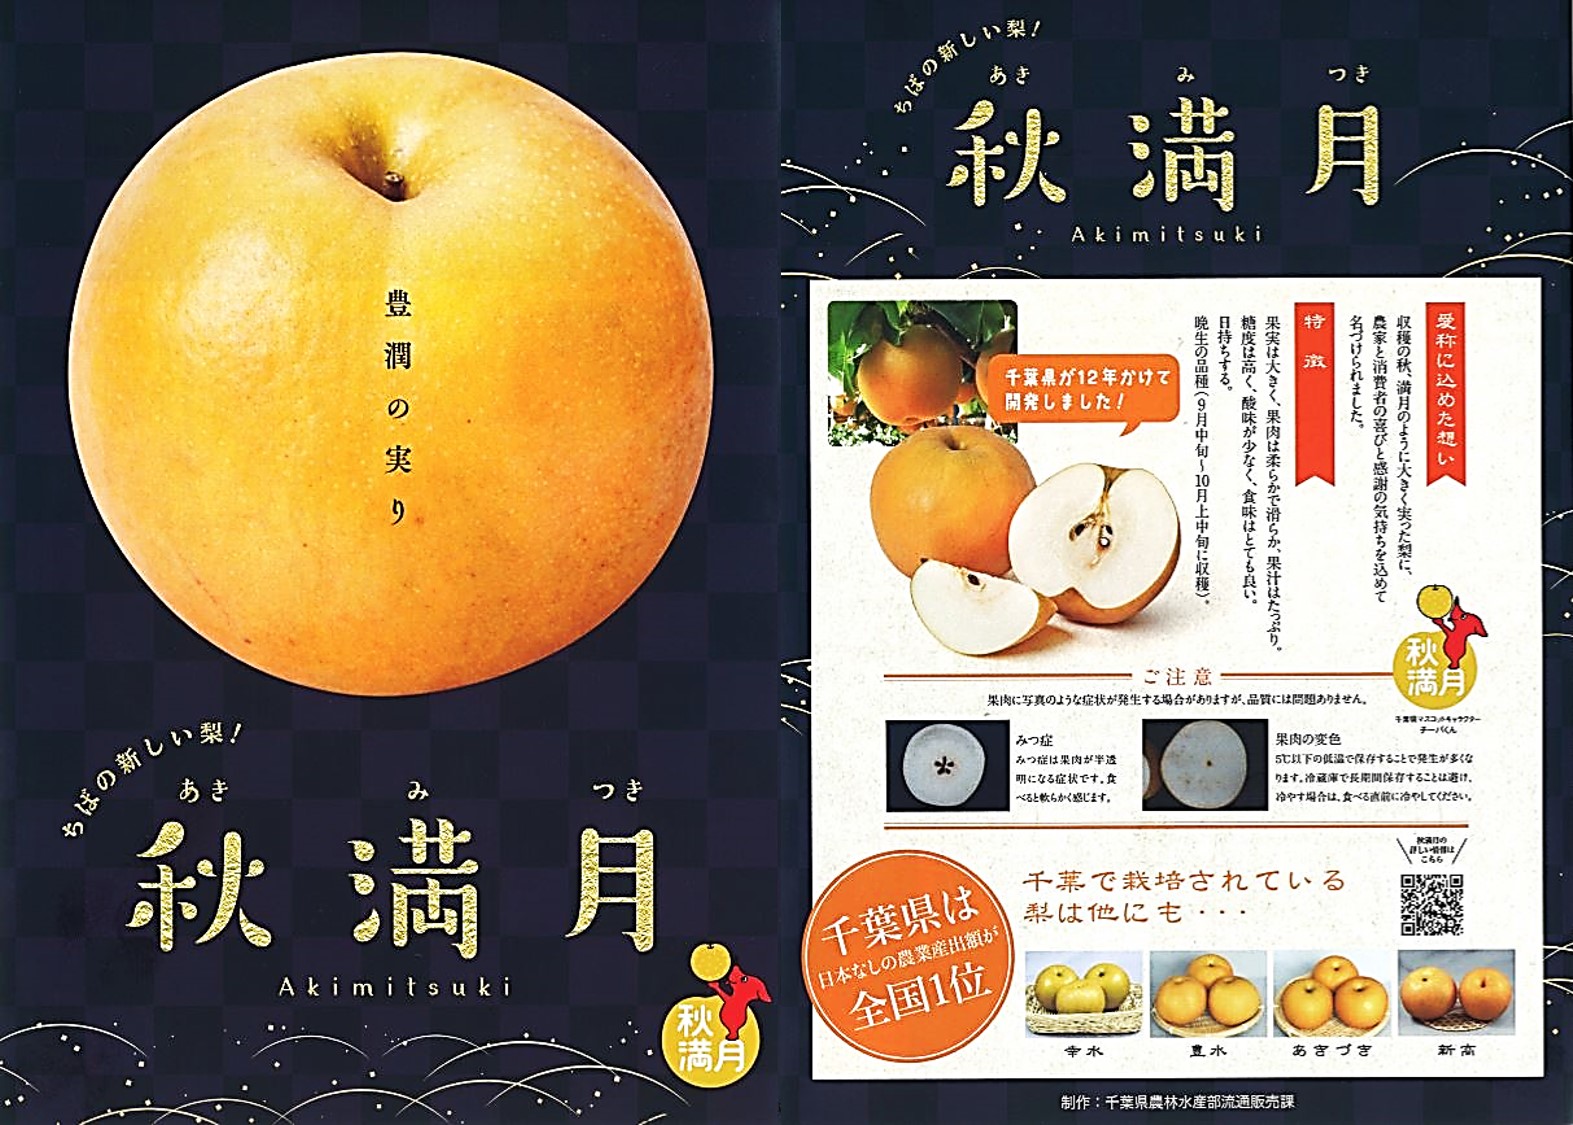 マレーシア・香港向けに千葉県産の新品種の梨「秋満月」を初輸出致します。